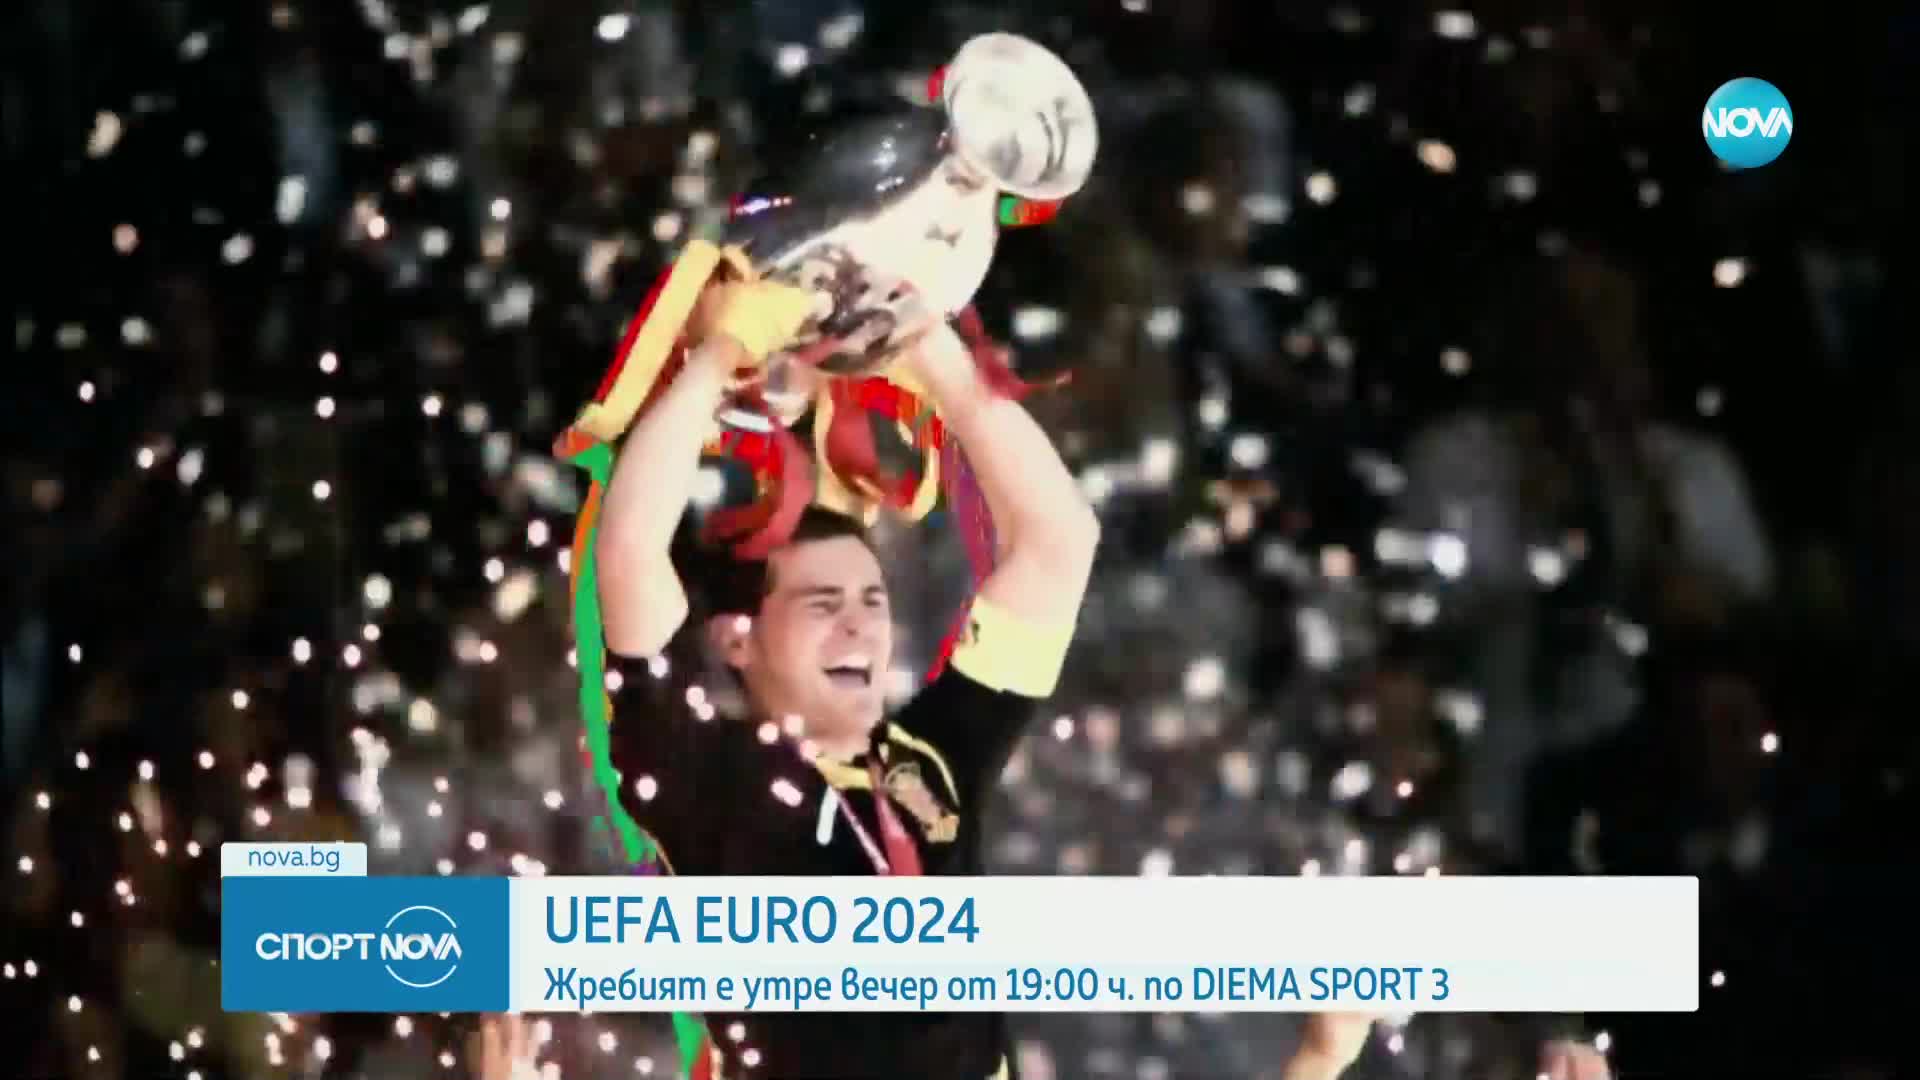 Нова Броудкастинг Груп и Българската национална телевизия обявиха партньорство за UEFA EURO 2024™